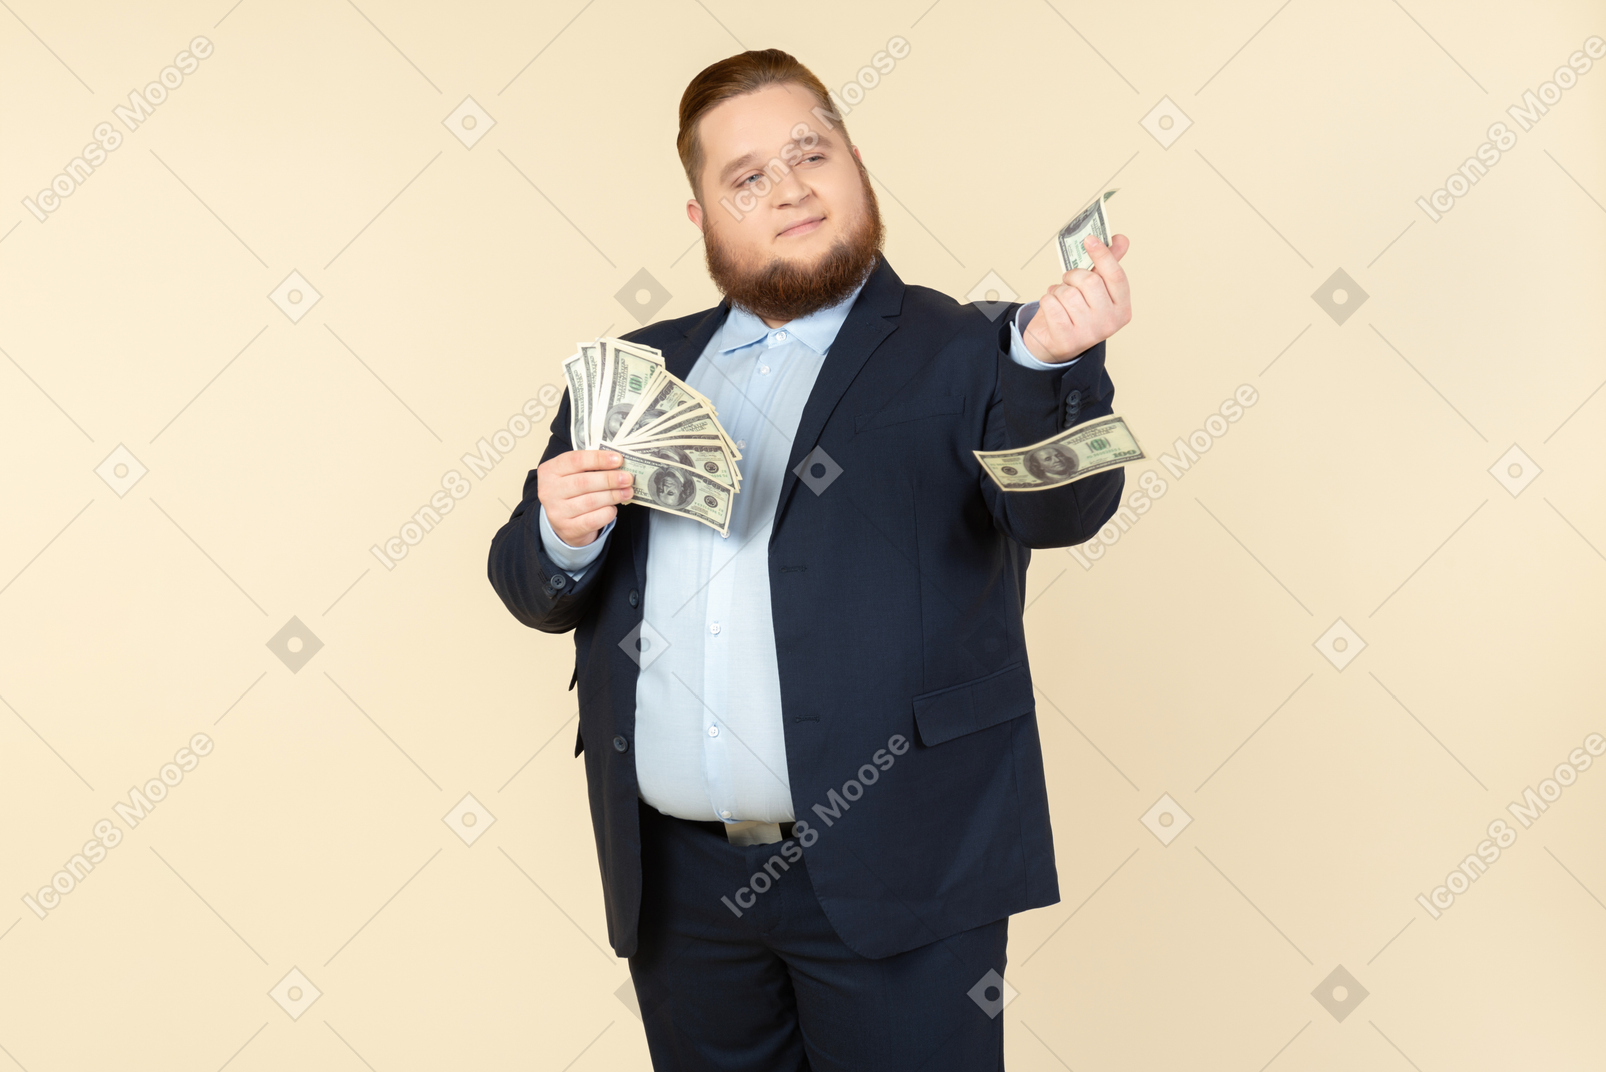 Un uomo taglie forti in un costume nero con banconote da un dollaro in mano